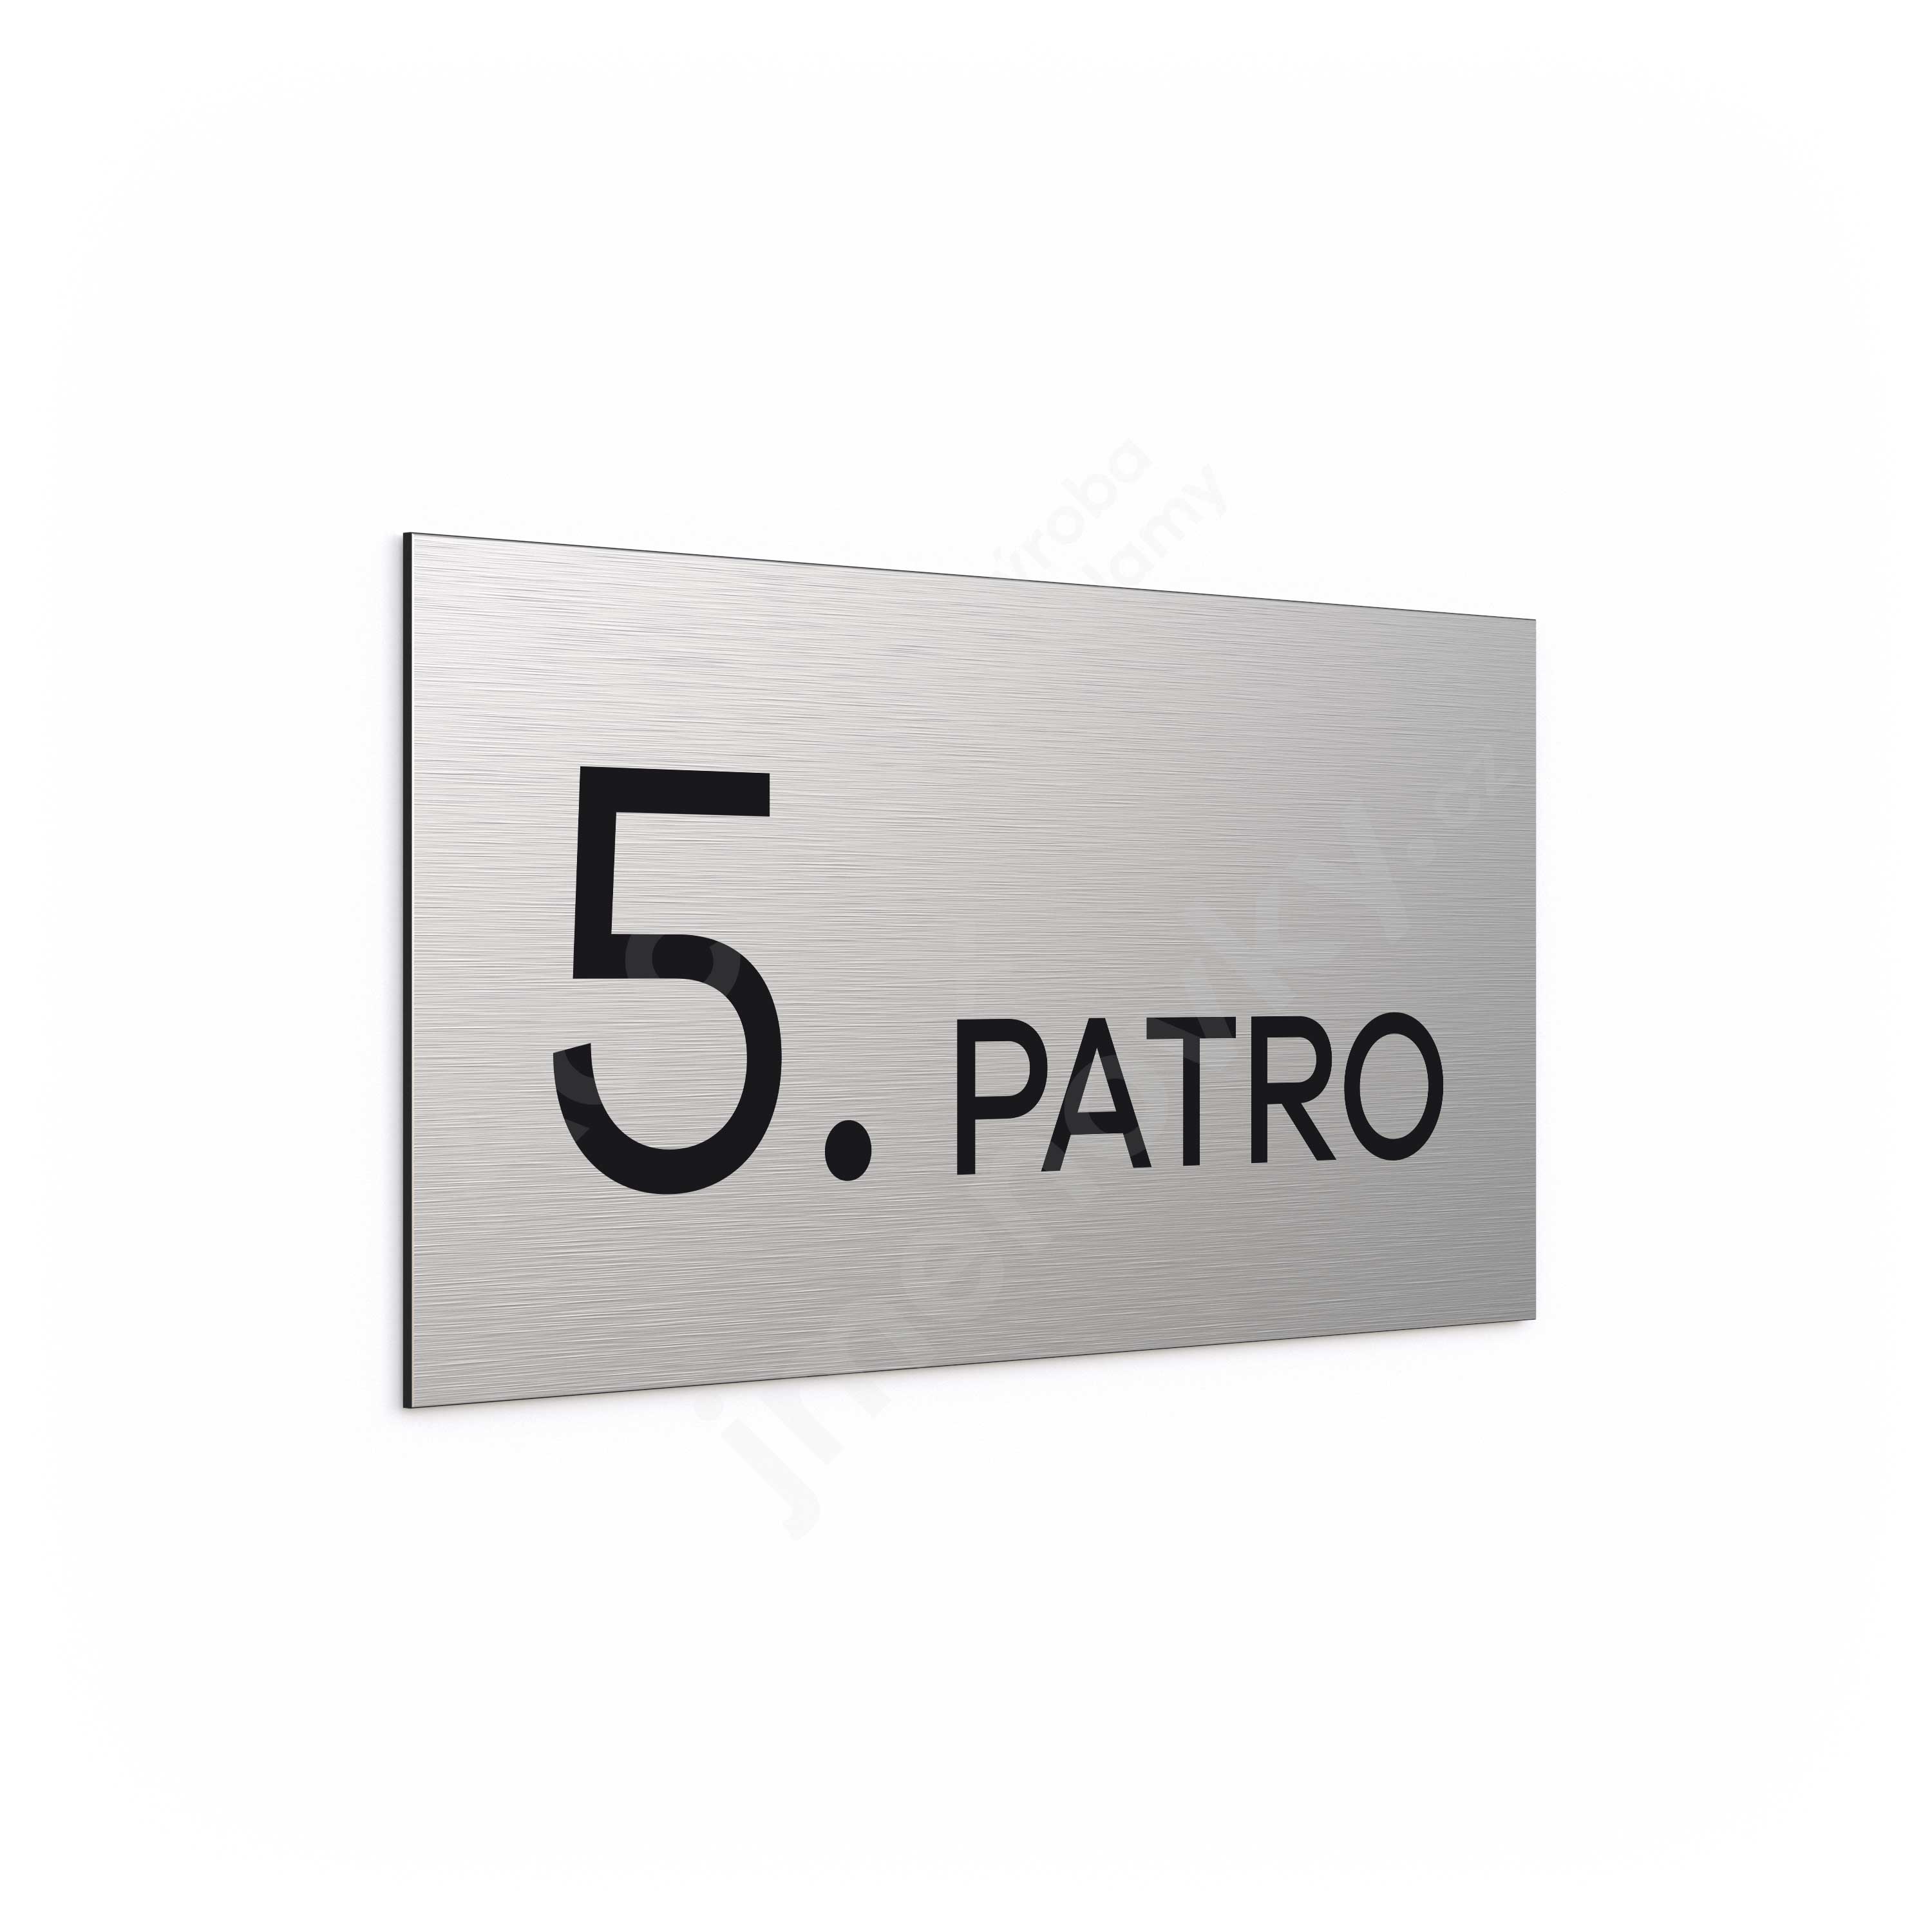 Oznaen podla "5. PATRO" (300 x 150 mm)